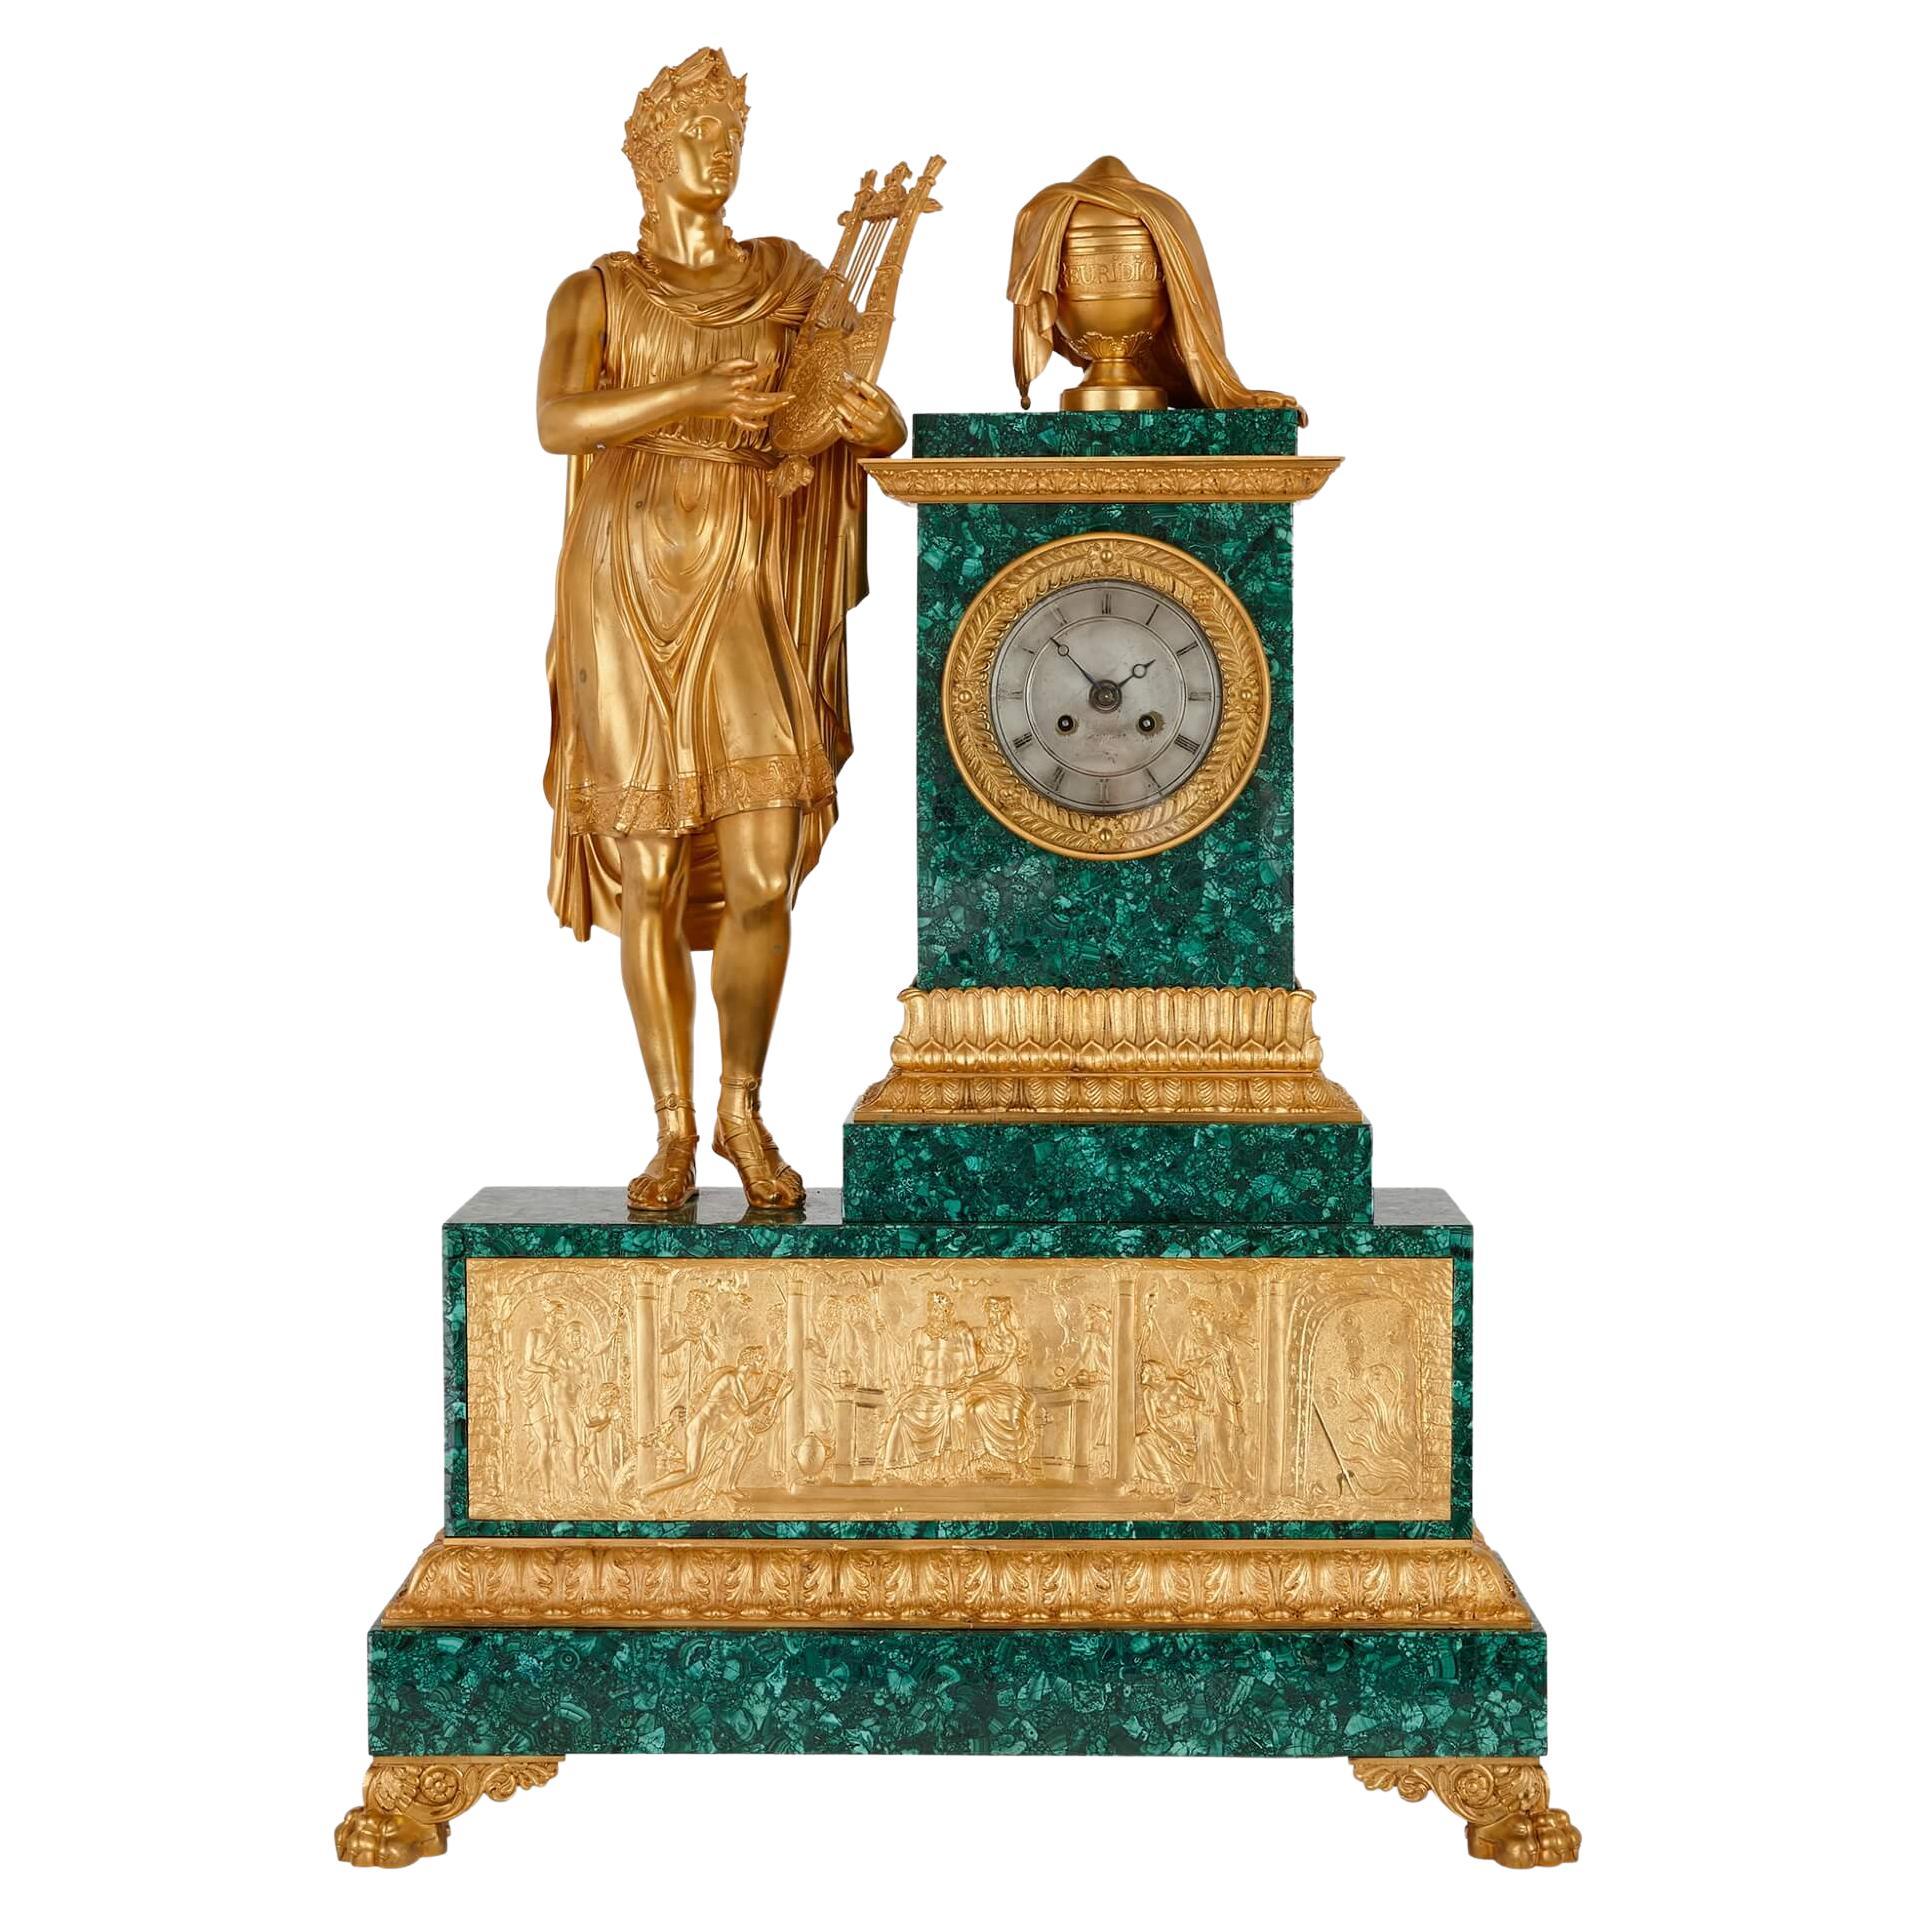 Impressive French Empire Period Ormolu and Malachite Sculptural Mantel Clock